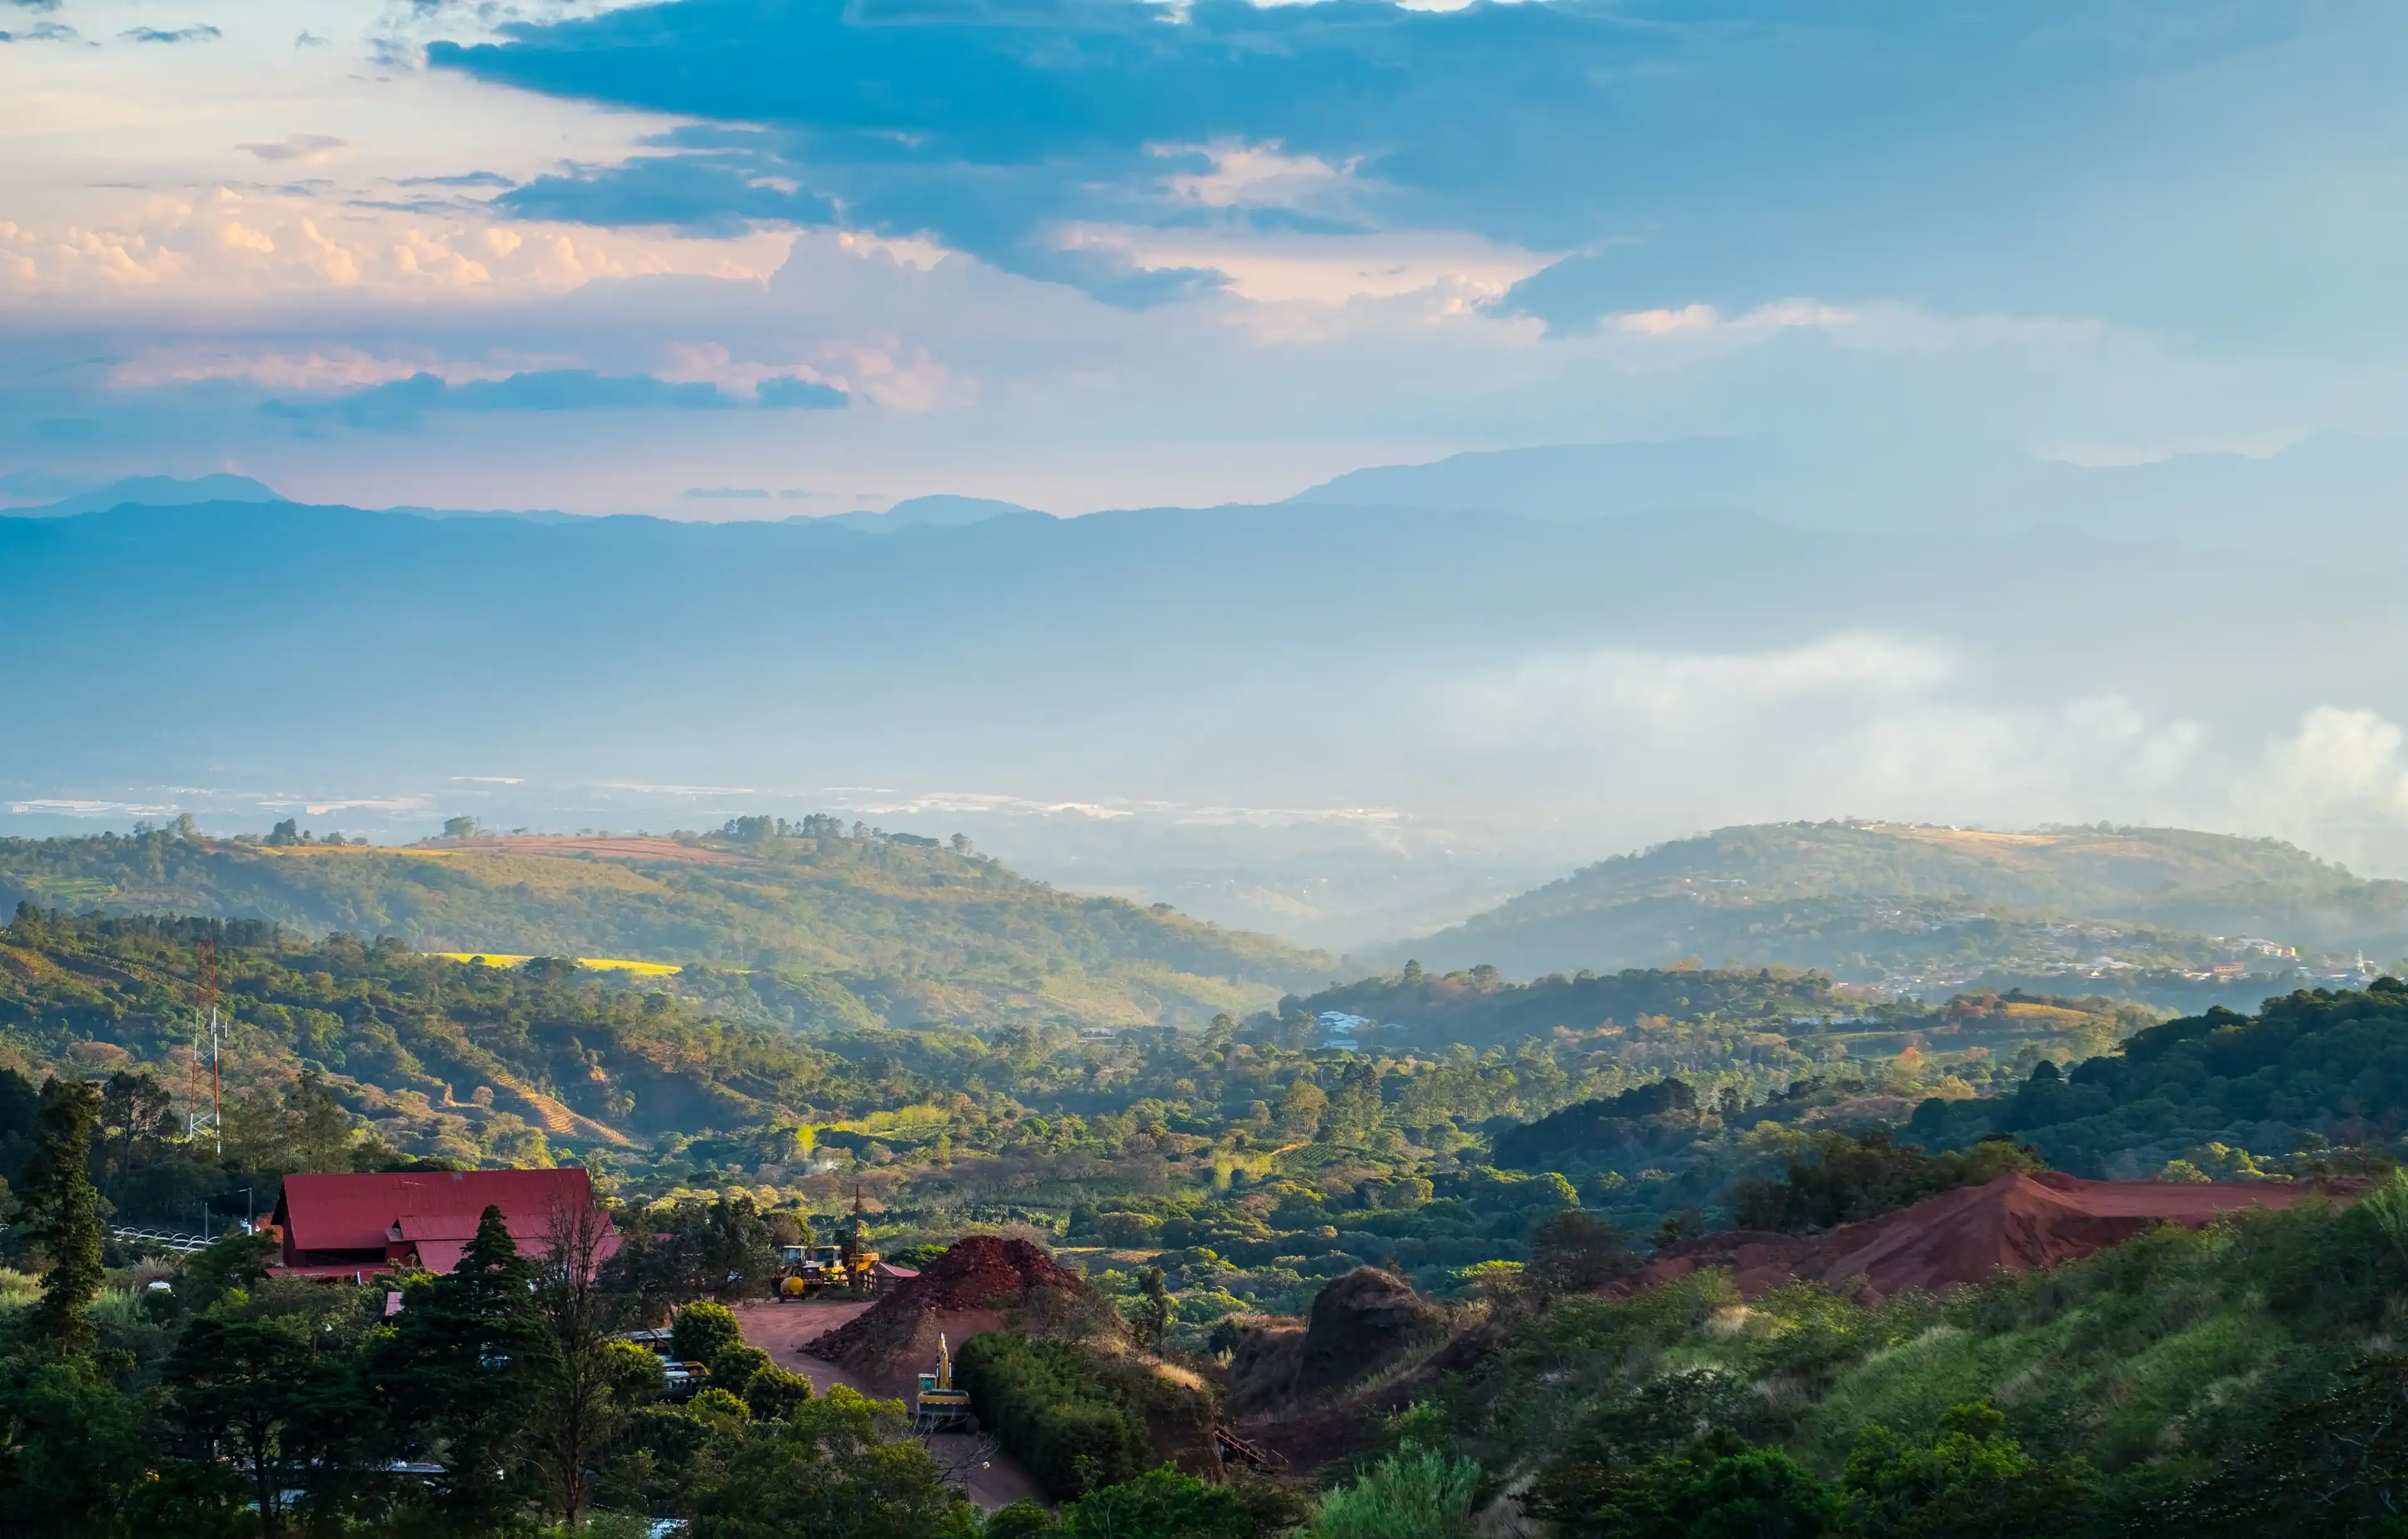 Вид на центральную долину Коста-Рики, район недалеко от столицы - города Сан-Хосе.